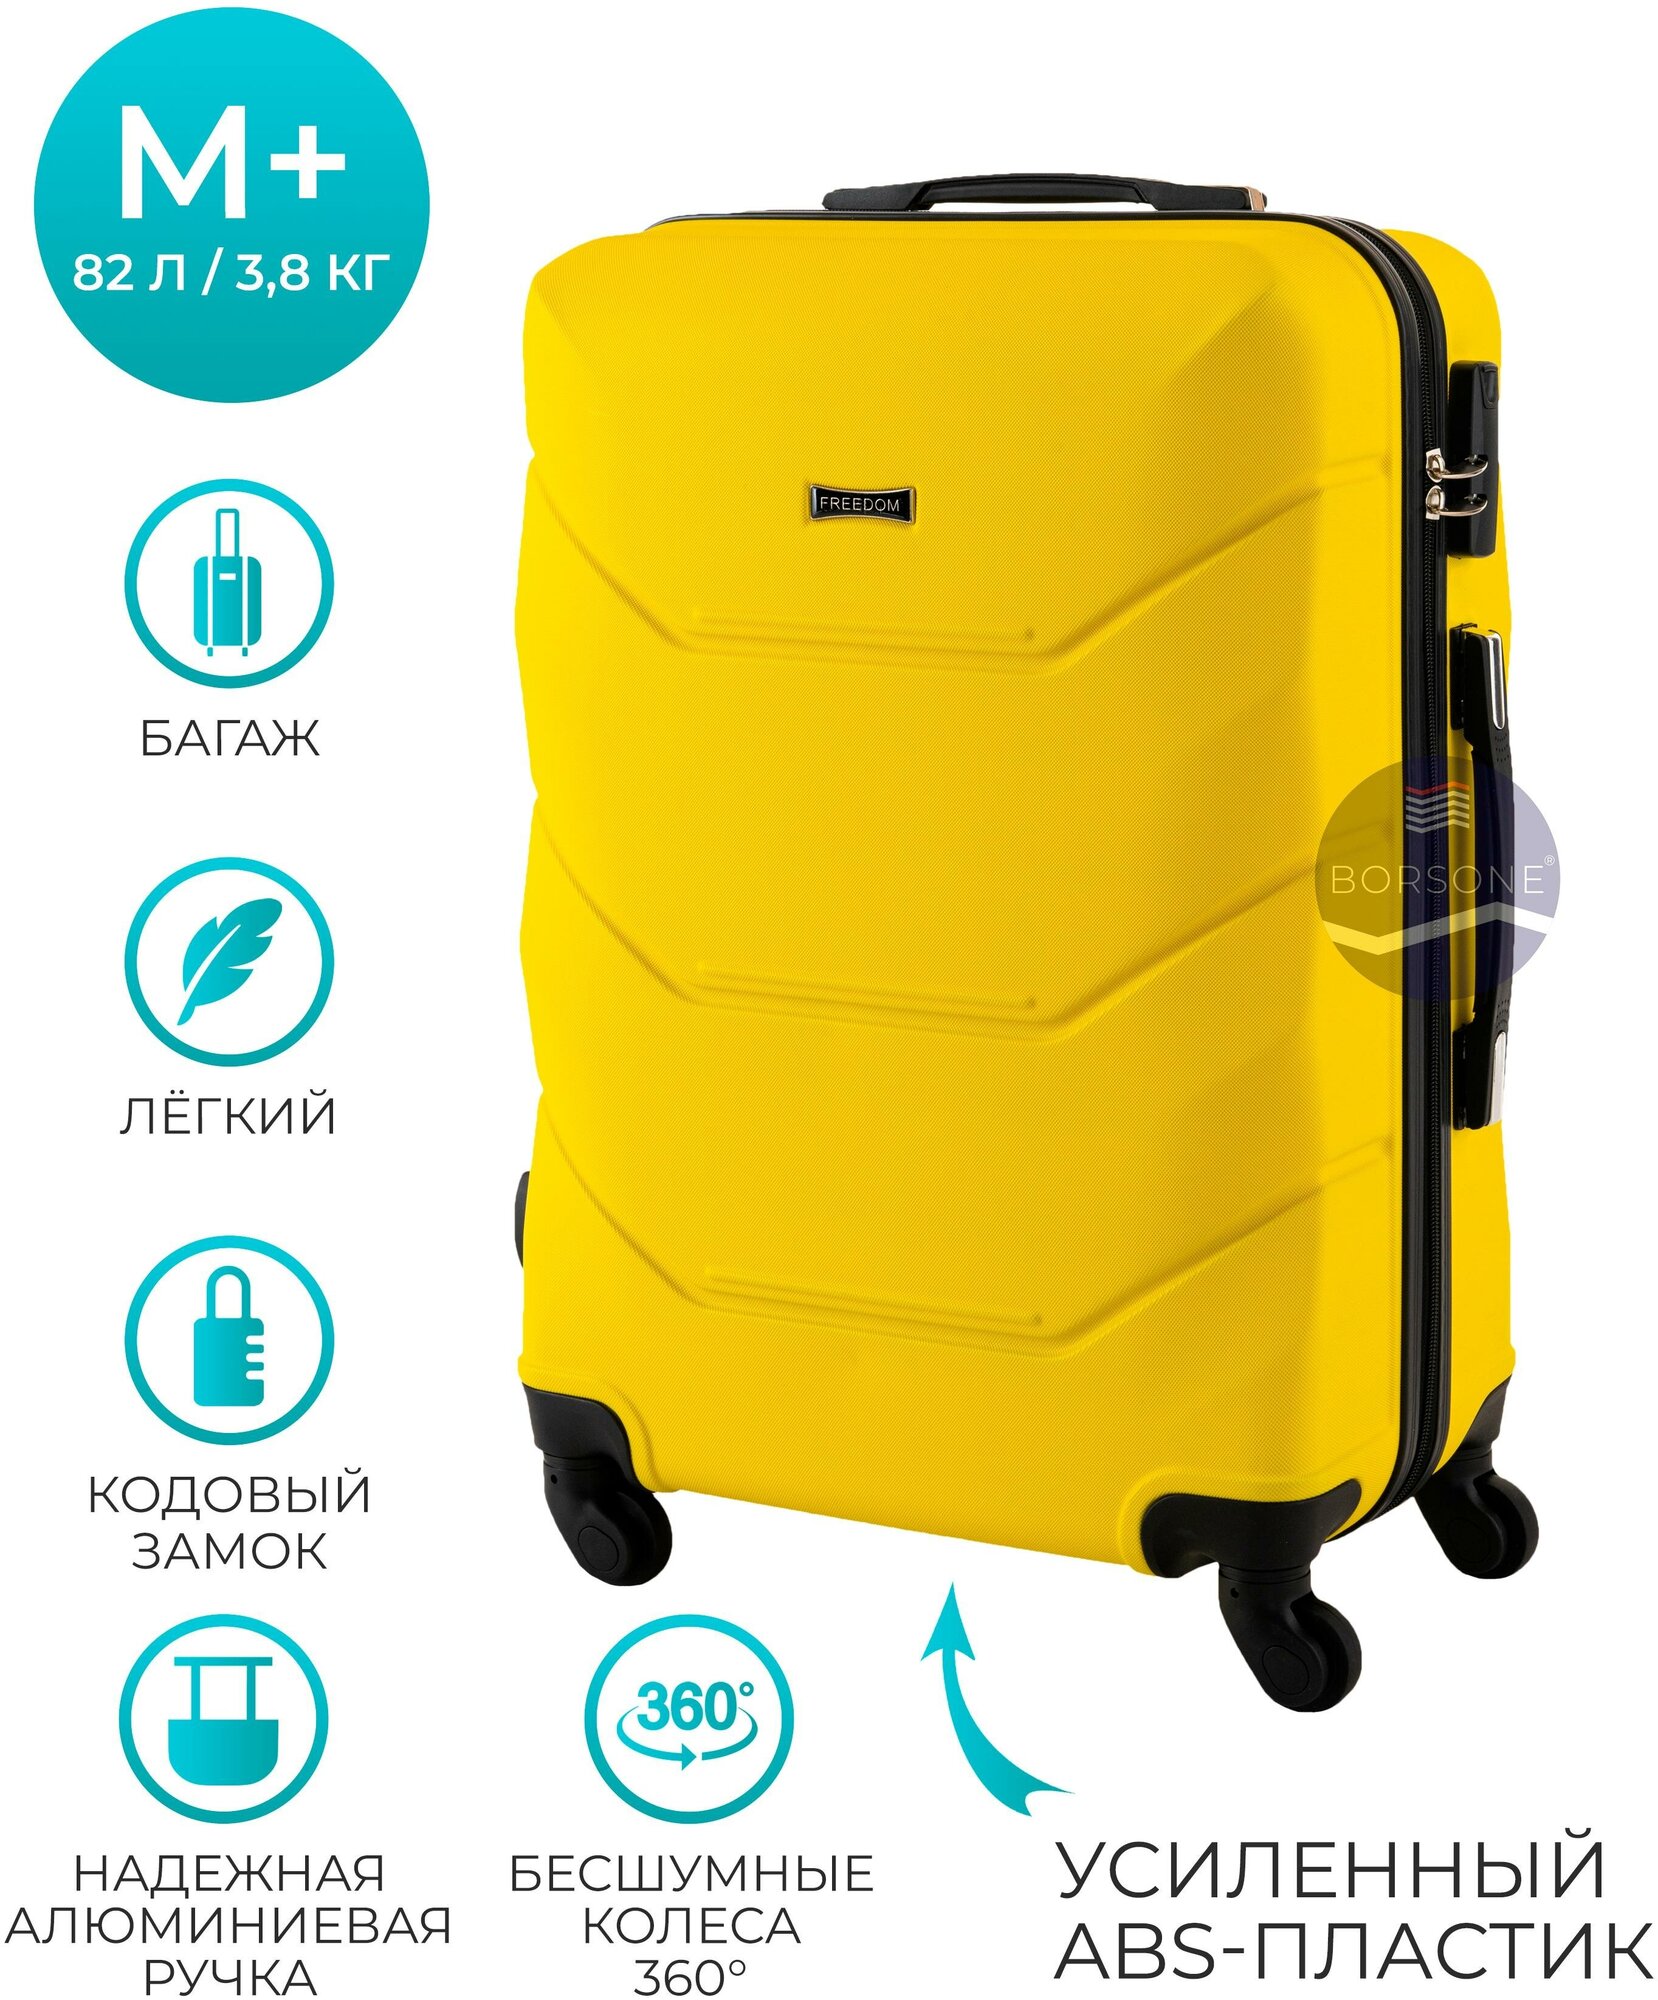 Пластиковый чемодан на 4-х колесах в размере М+